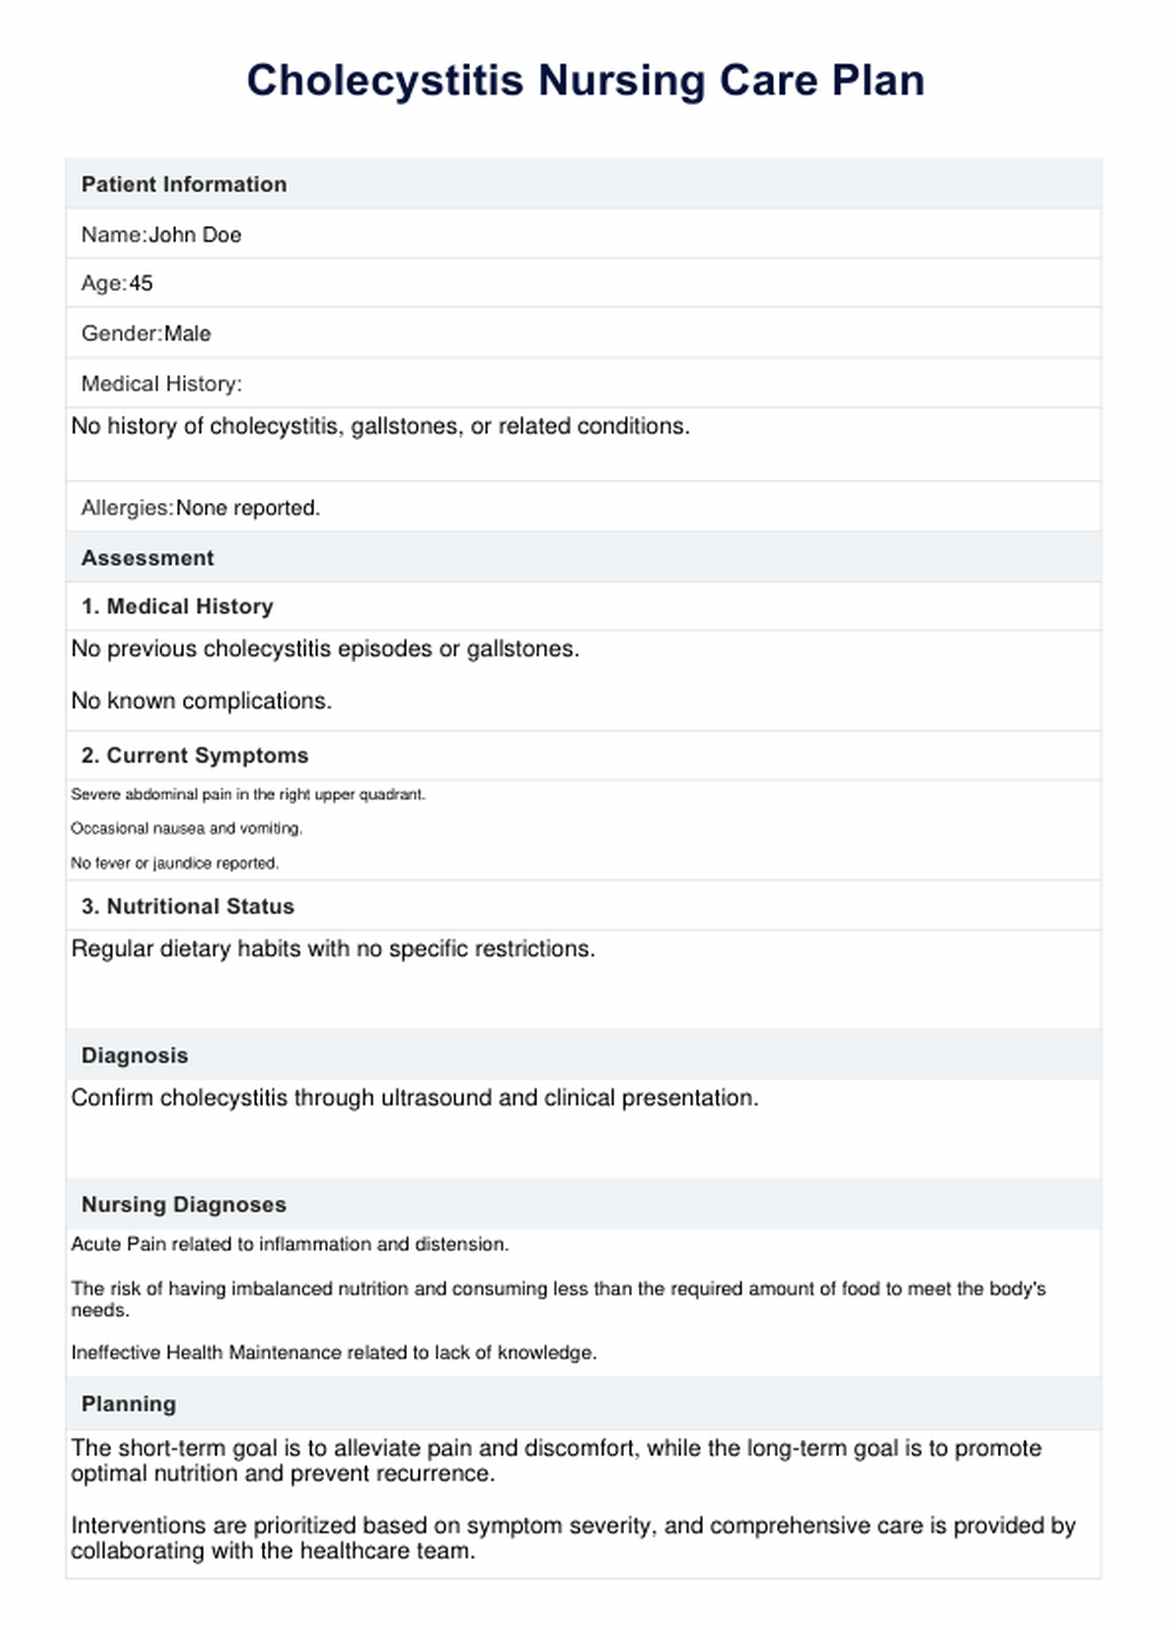 Cholecystitis Nursing Care Plan PDF Example